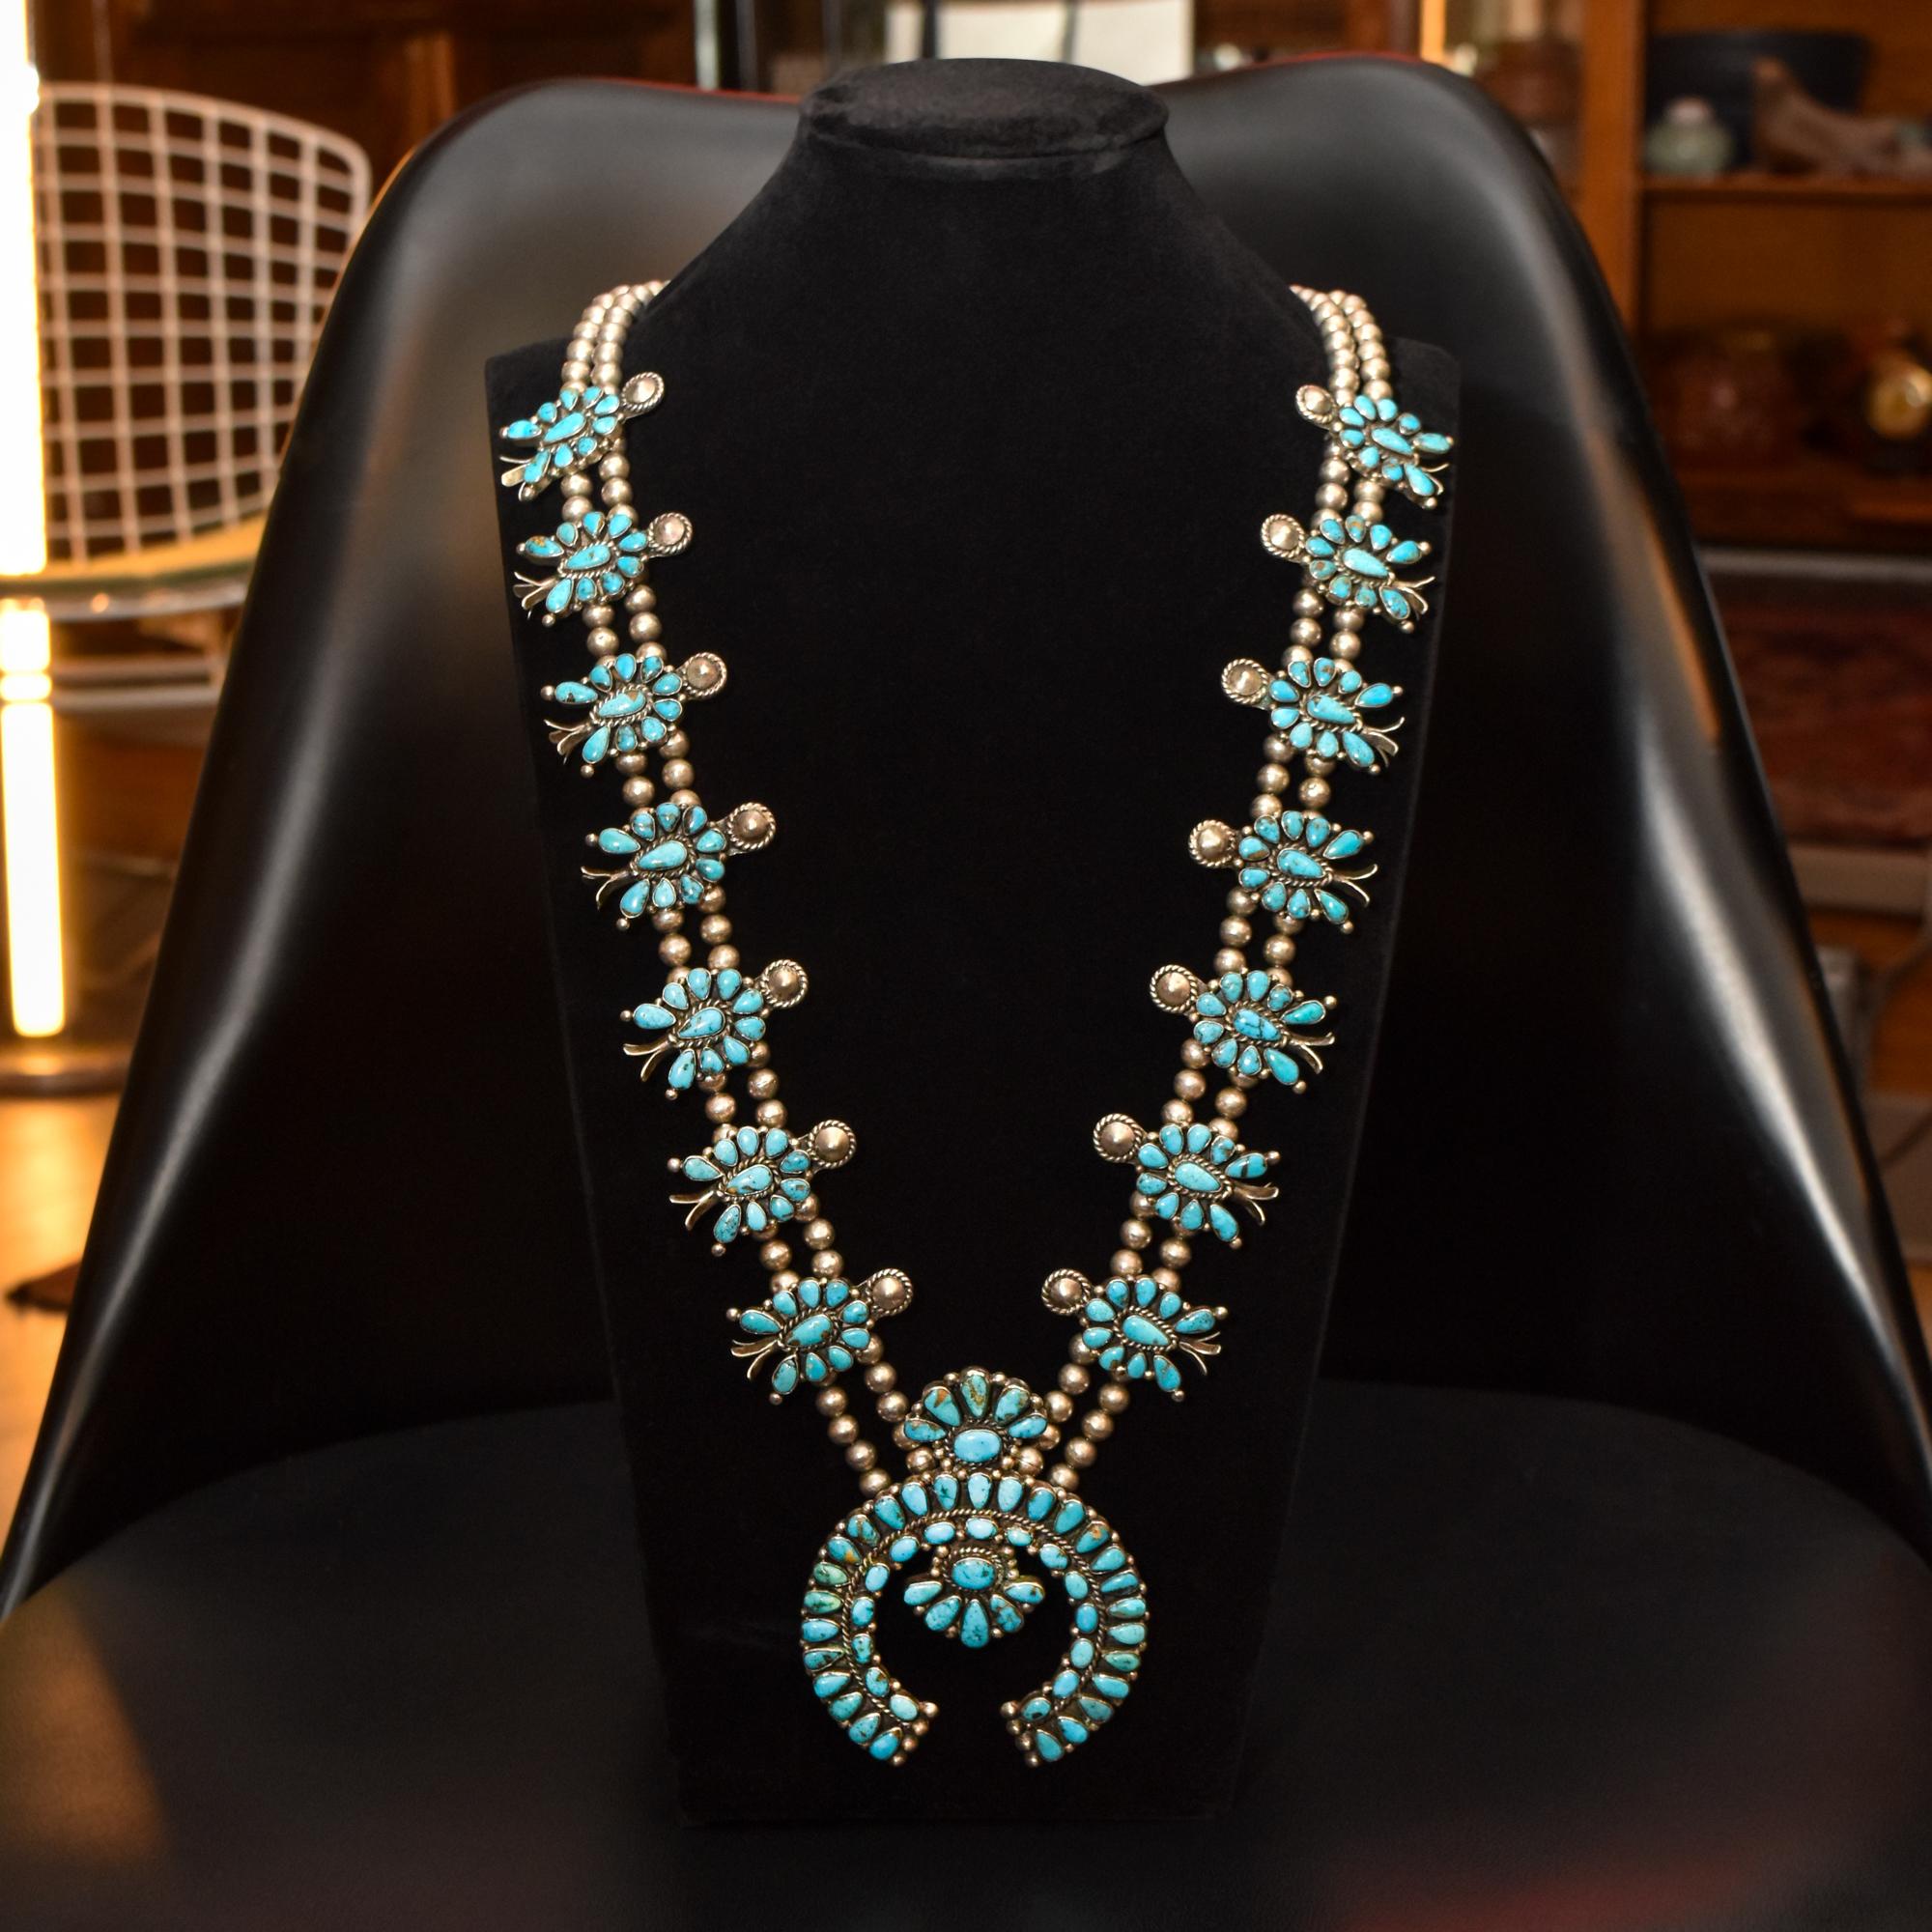 Un magnifique collier de fleurs de courge amérindiennes avec plus de 190 pierres de turquoise naturelles. Ce magnifique collier est fabriqué en argent sterling et présente 14 fleurs de courge traditionnelles, un pendentif Naja robuste et des perles